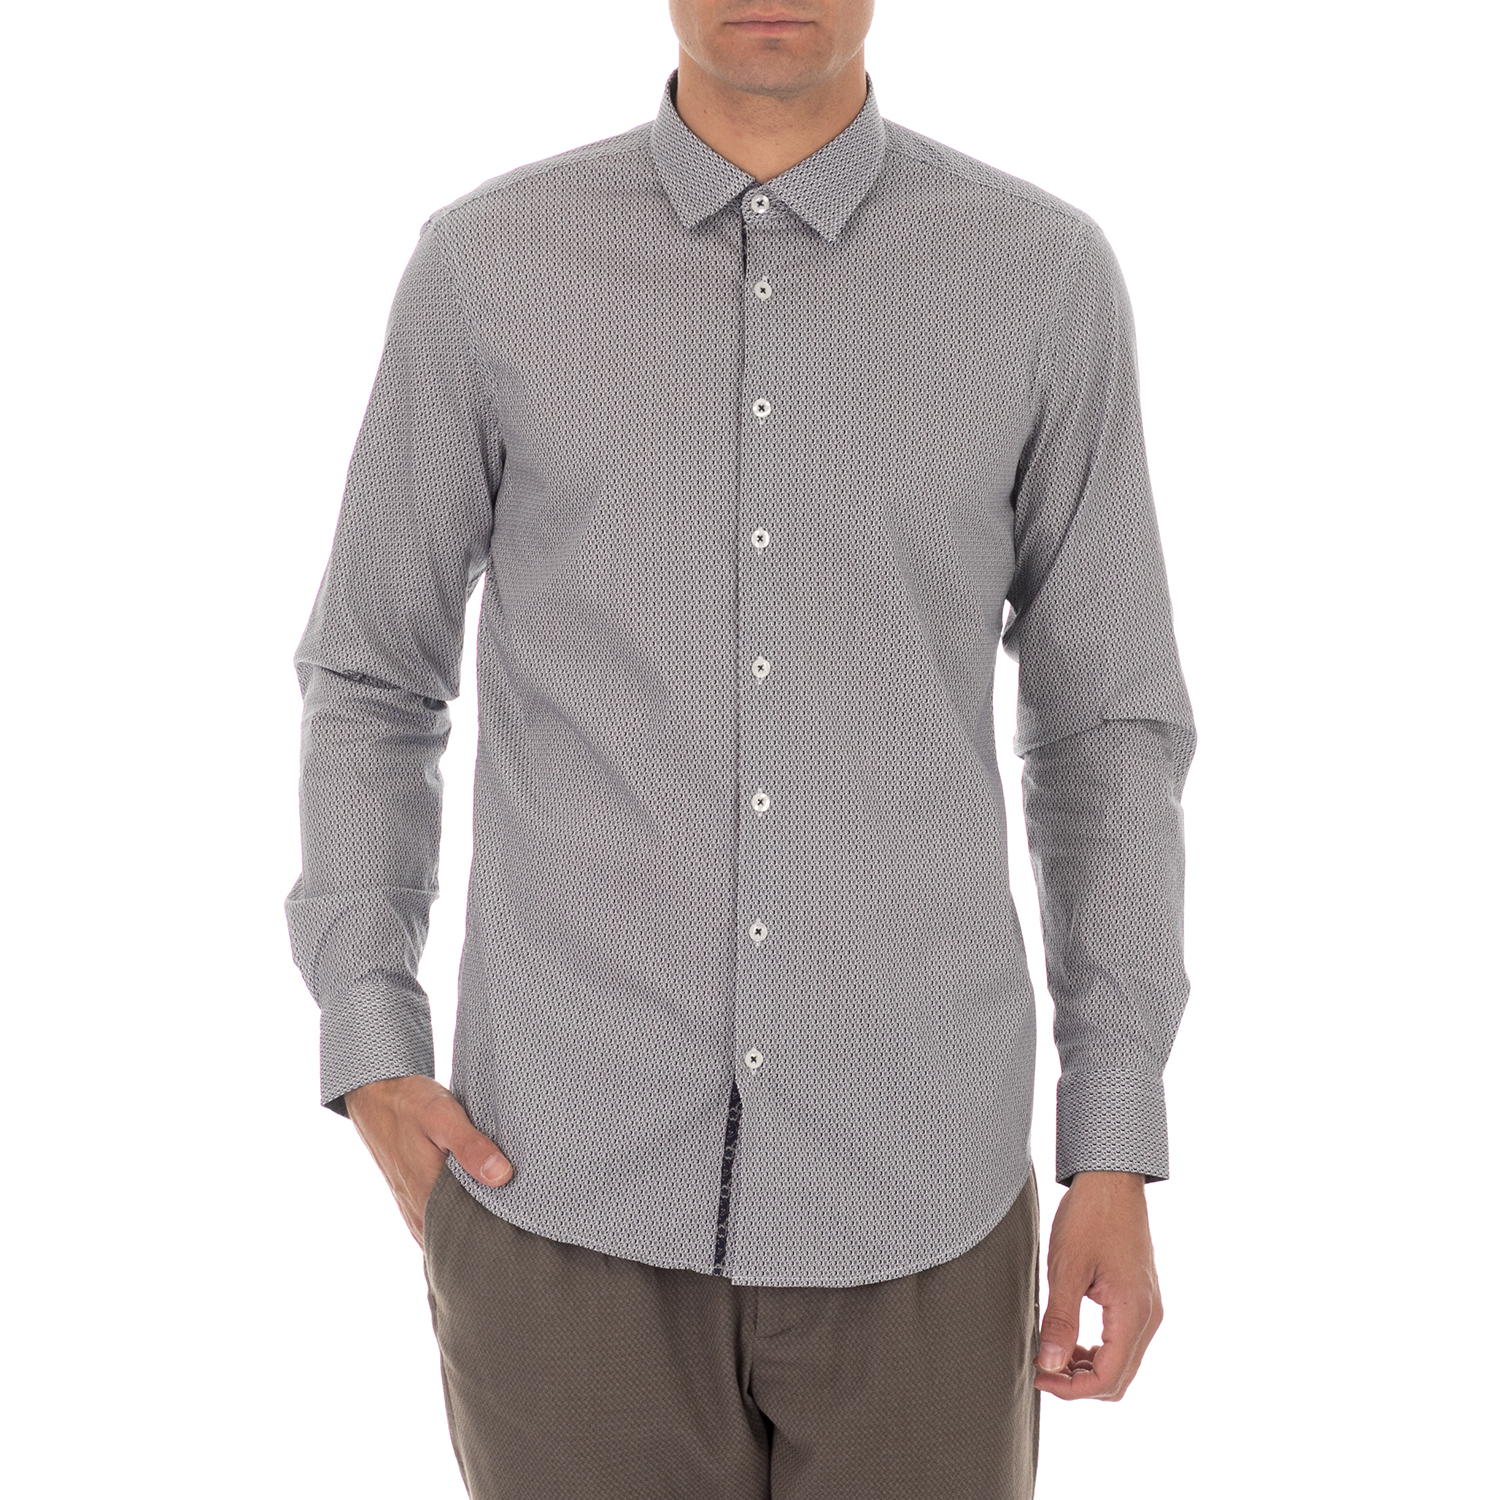 Ανδρικά/Ρούχα/Πουκάμισα/Μακρυμάνικα SSEINSE - Ανδρικό πουκάμισο SSEINSE λευκό μπλε